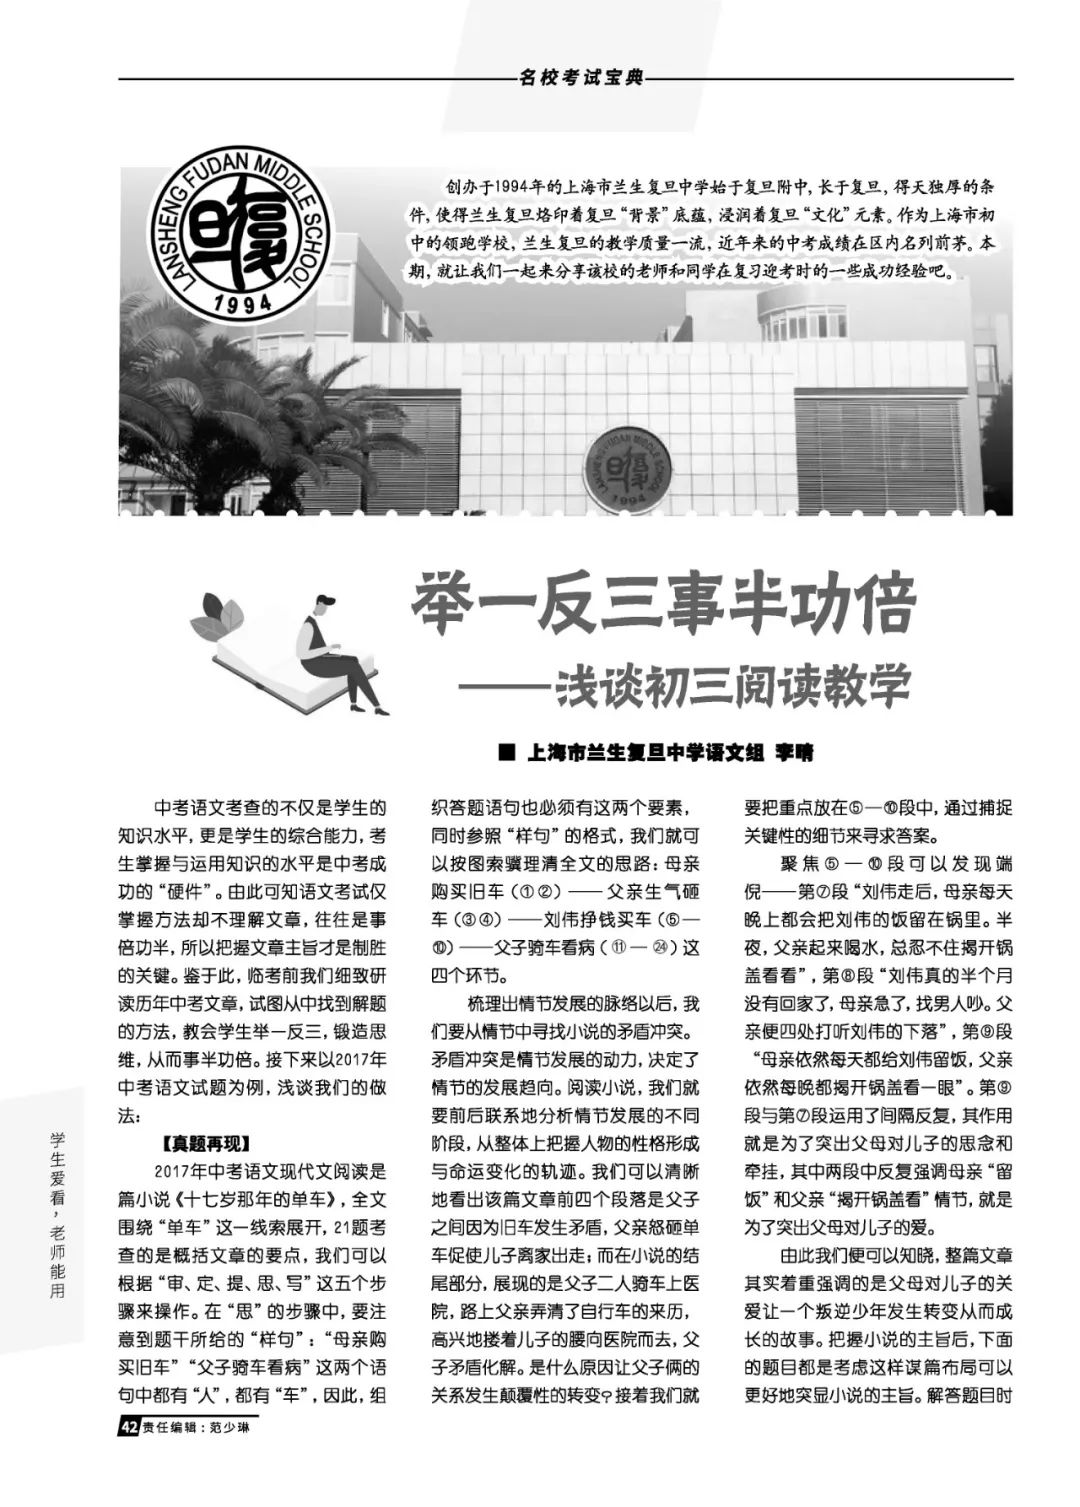 必備參考書：2019年上海語文中高考升學指導特刊，現已正式出版！ 留學 第16張